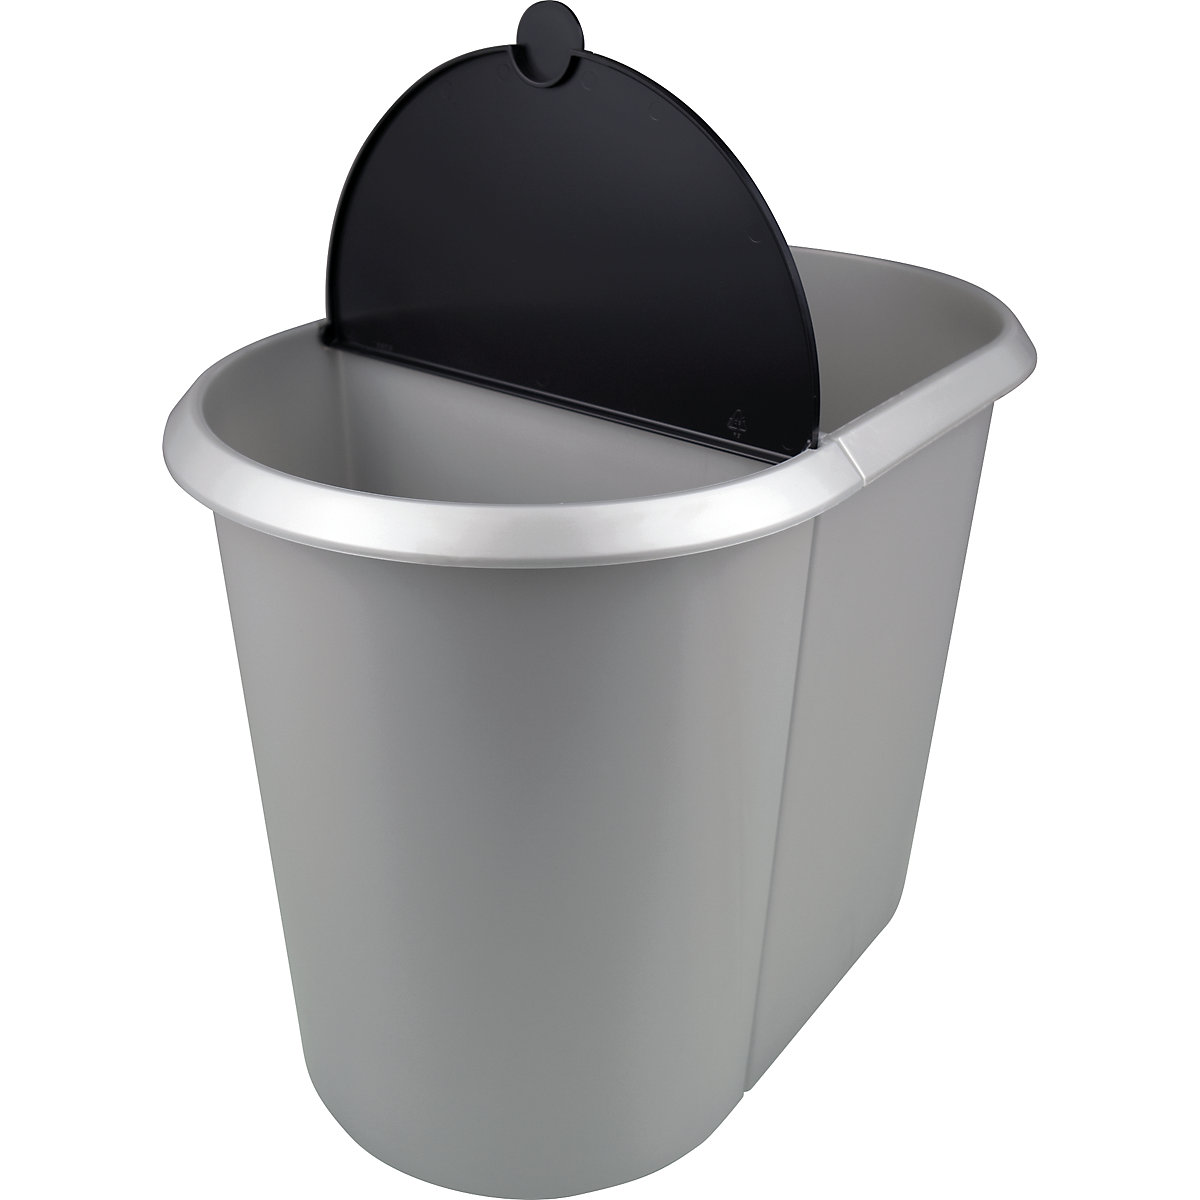 helit – Waste bin system (Product illustration 11)